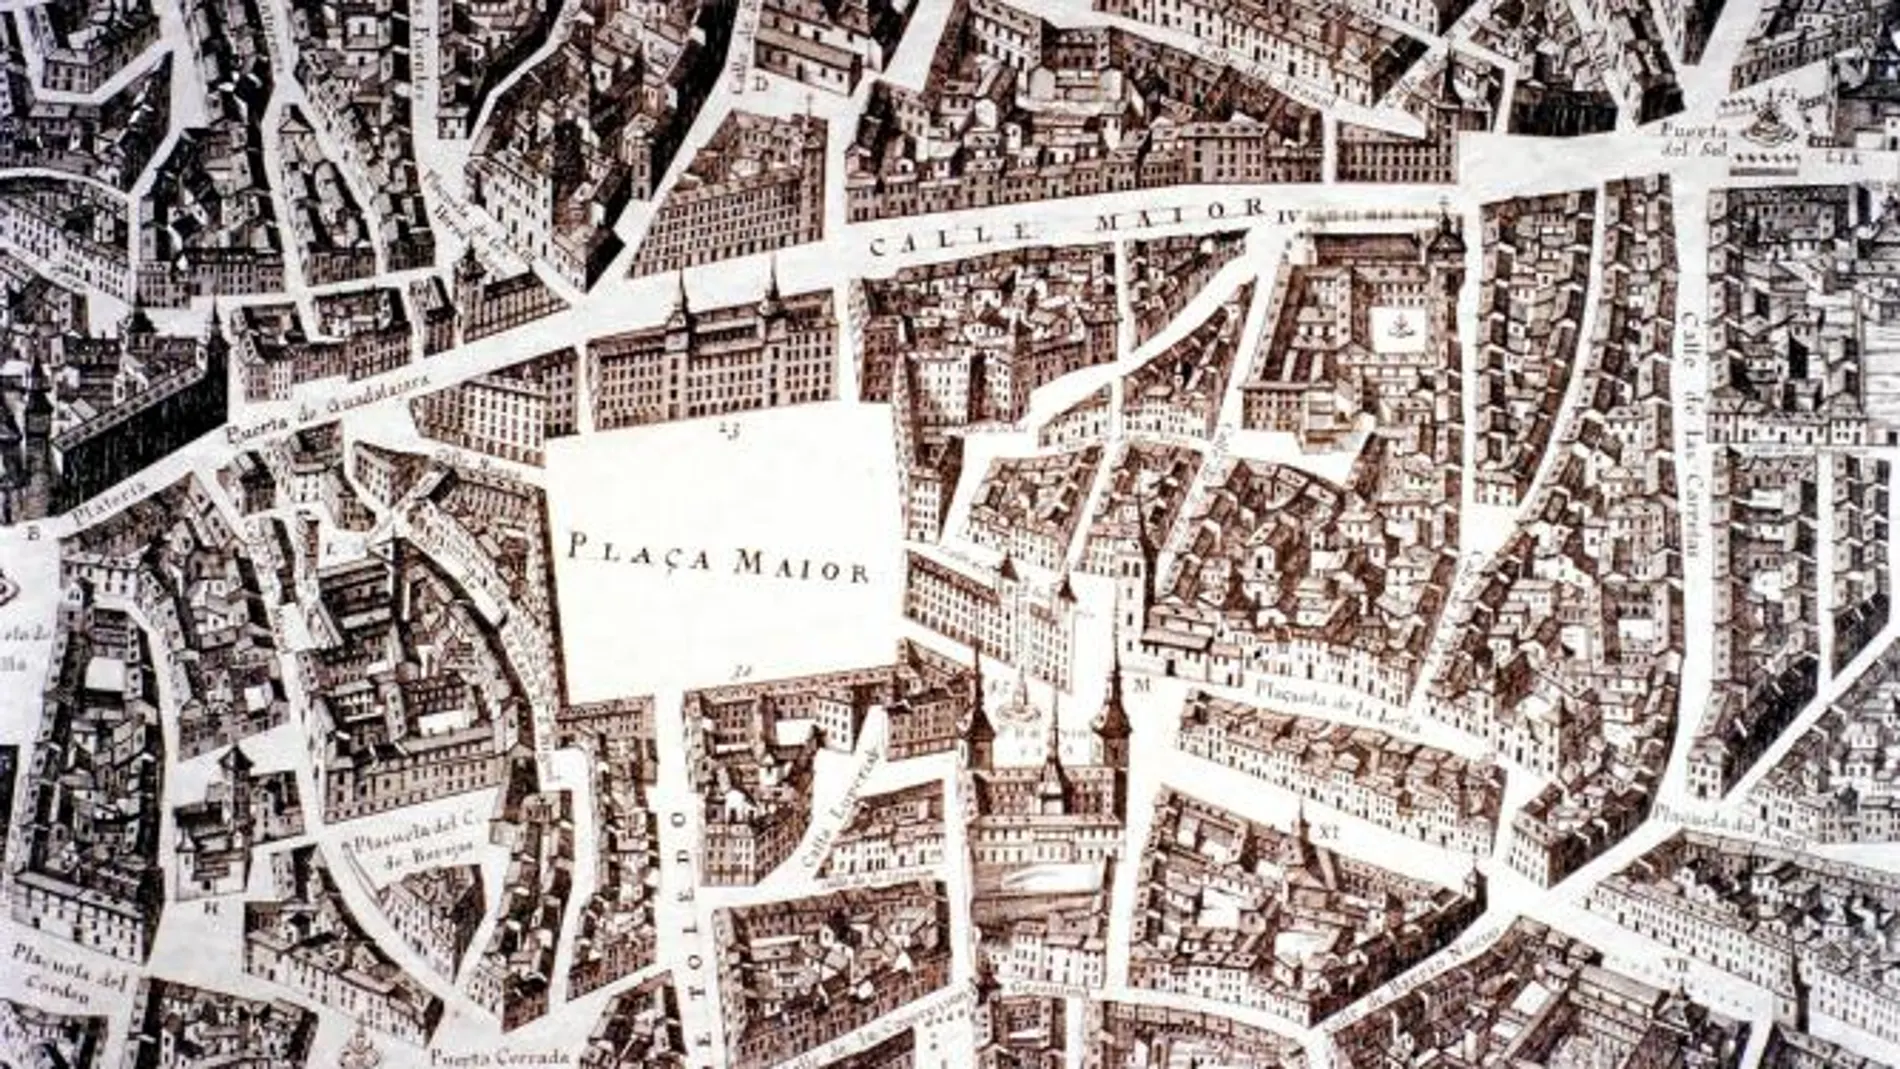 Un fragmento del plano de Madrid de Pedro de Texeira ilustra la felicitación navideña del alcalde de Madrid